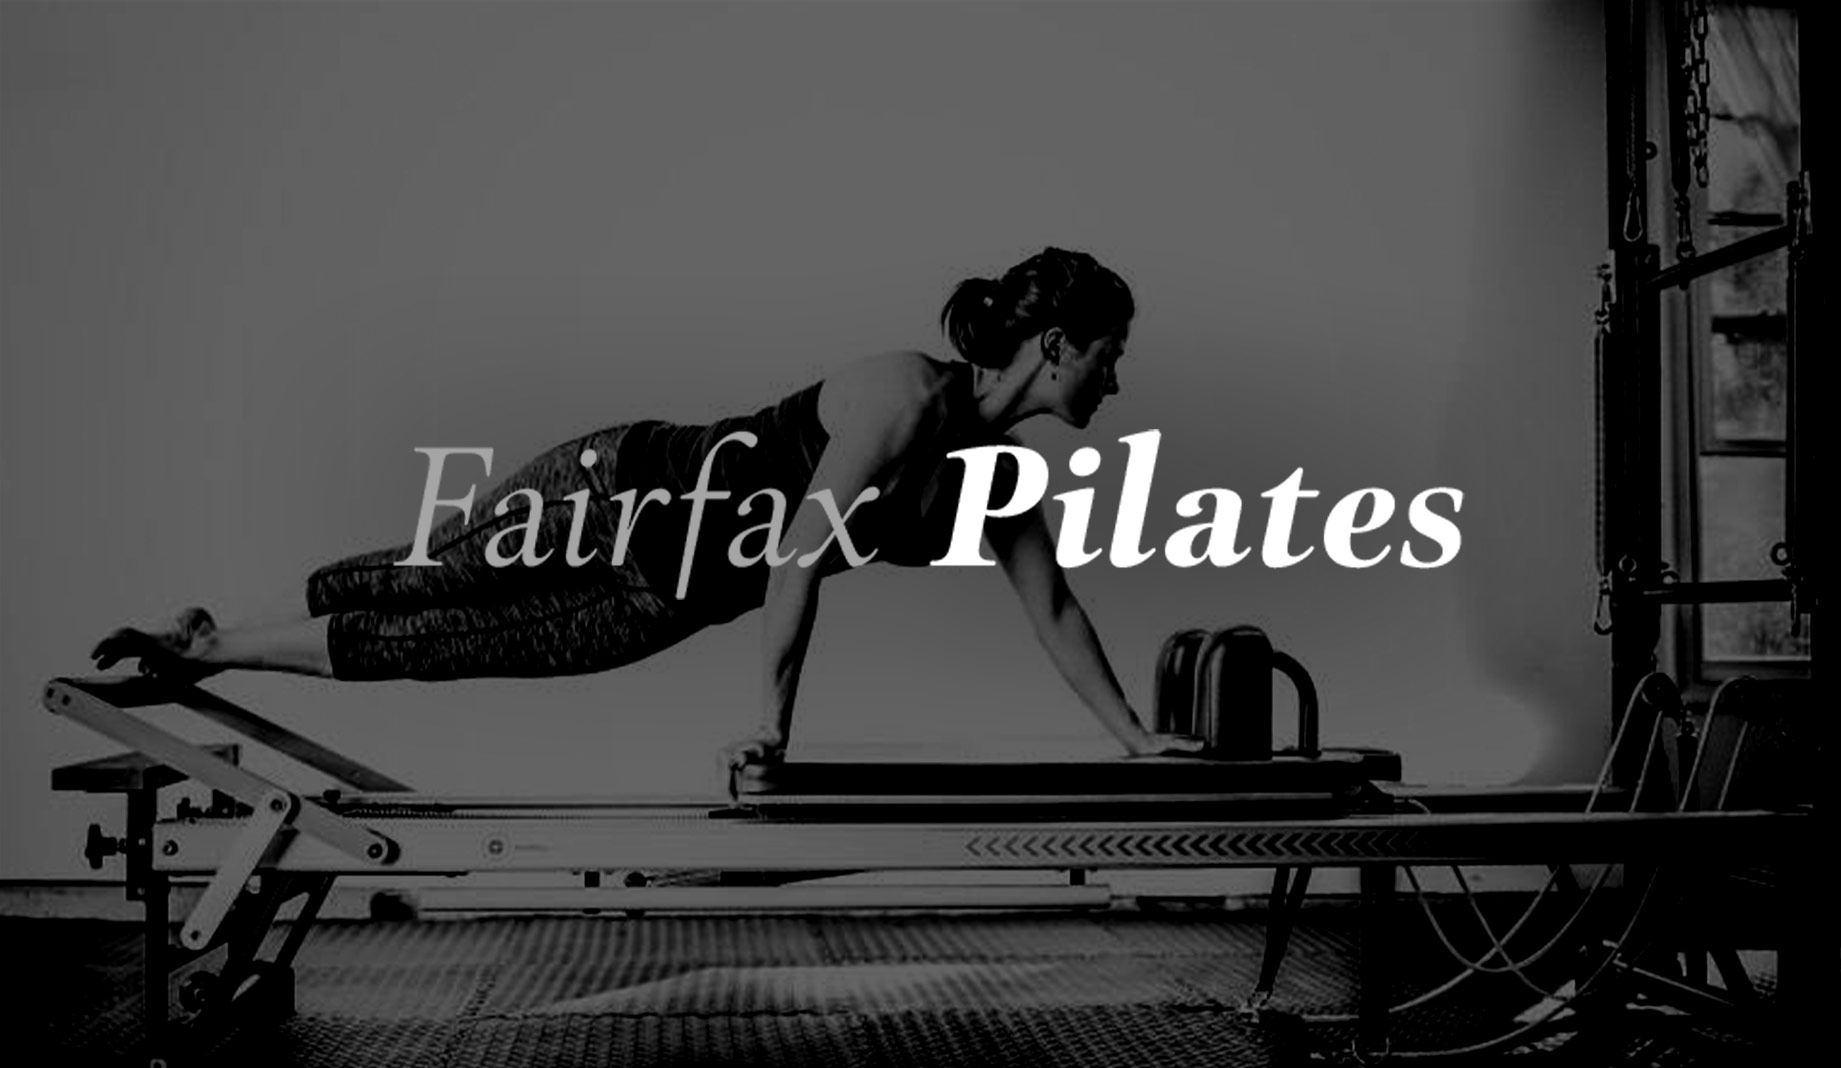 Fairfax Pilates 